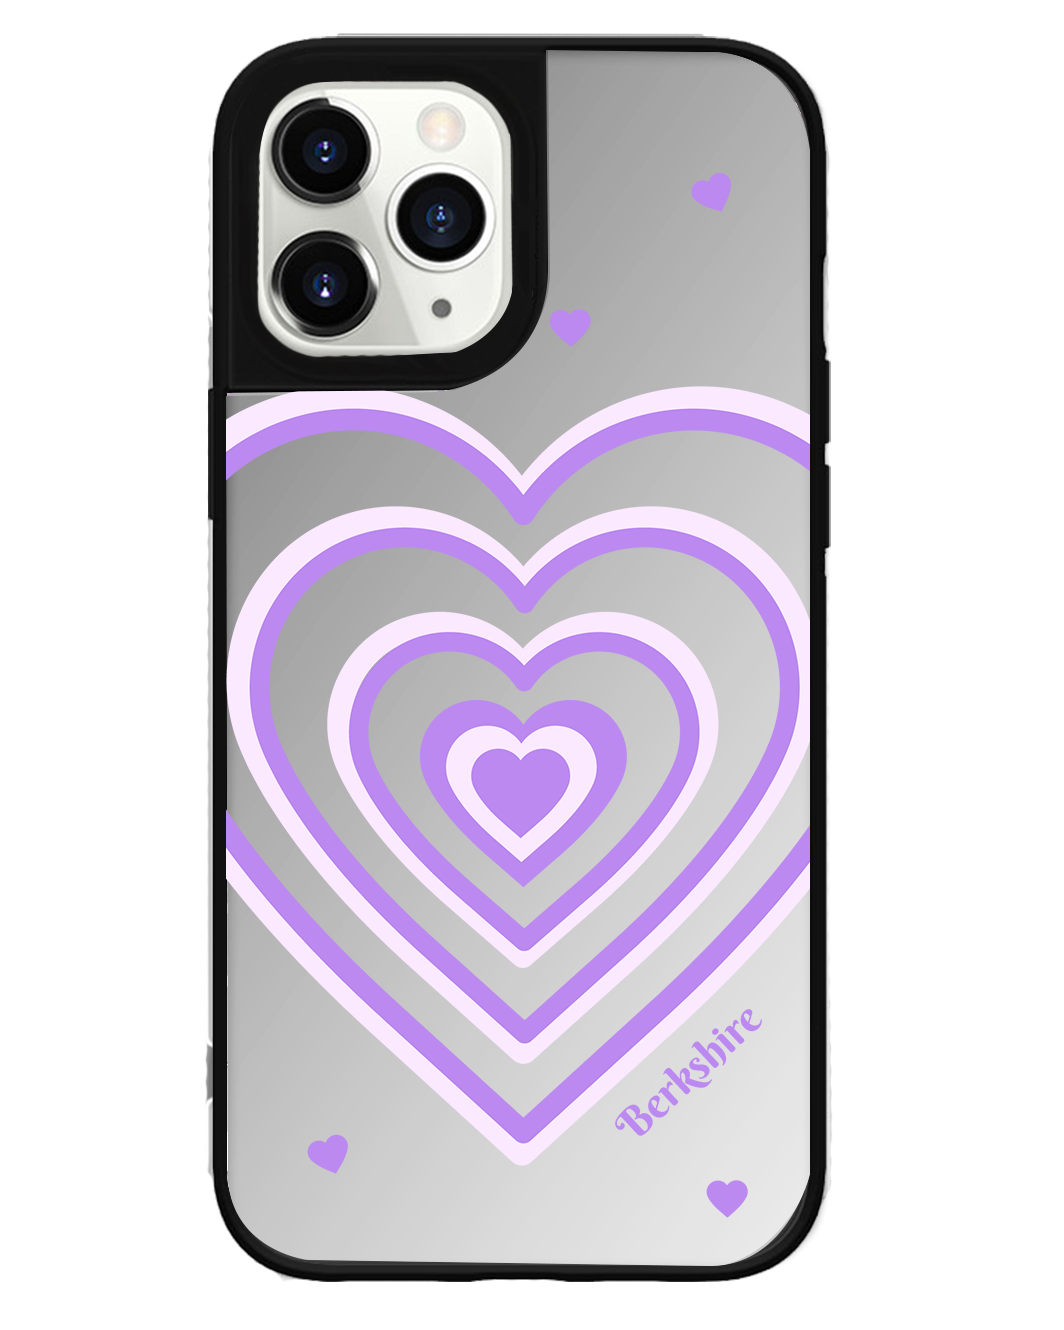 iPhone Mirror Grip Case -  Love Mirror Violet